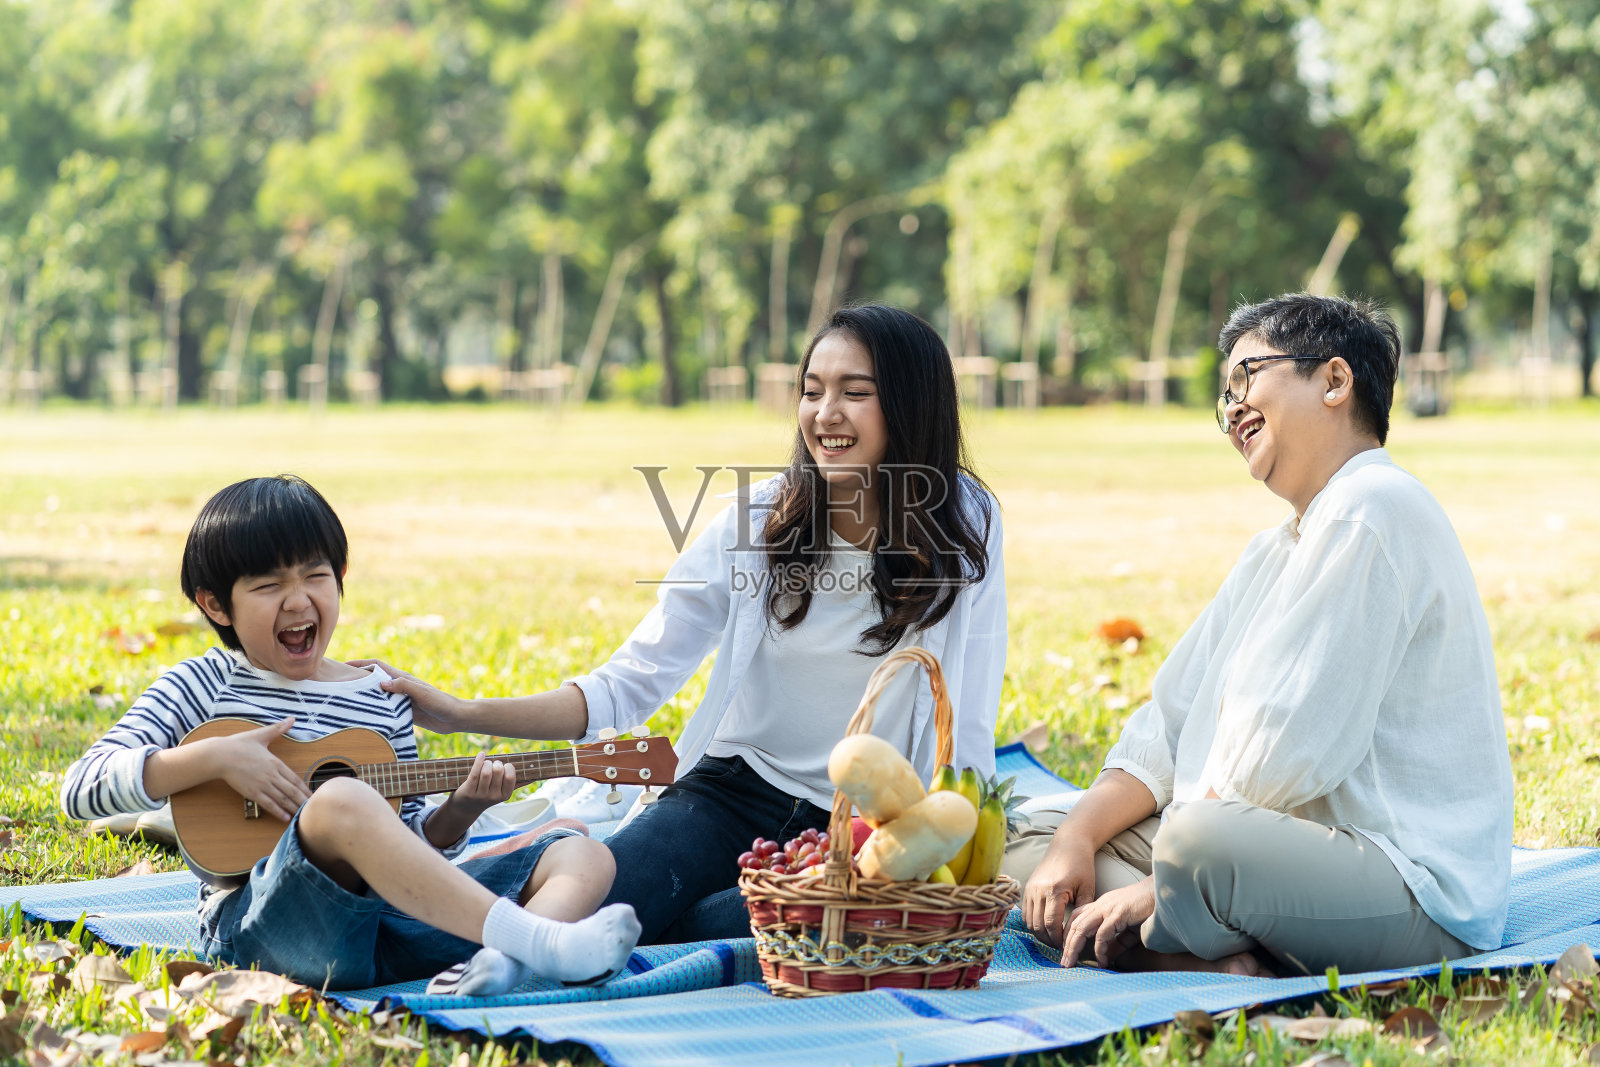 亚洲家庭在新鲜的绿色公园一起野餐。妈妈微笑着抚摸孩子，奶奶开心地看着孩子弹尤克里里或迷你吉他。放松的家庭活动。照片摄影图片